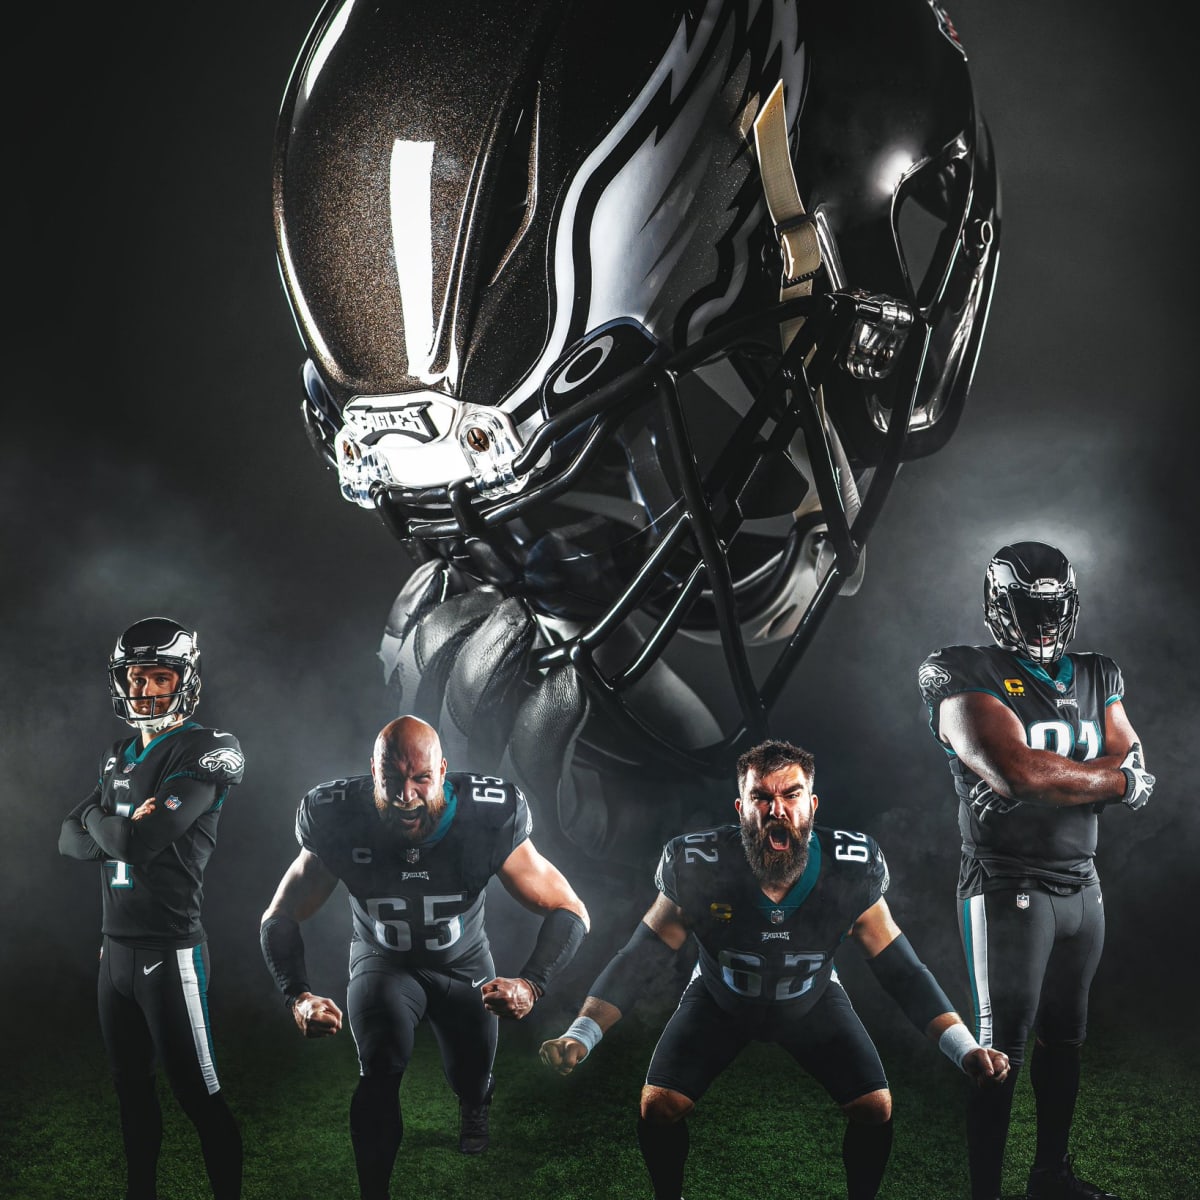 Eagles custom green jersey not ready, Jaguars will wear black